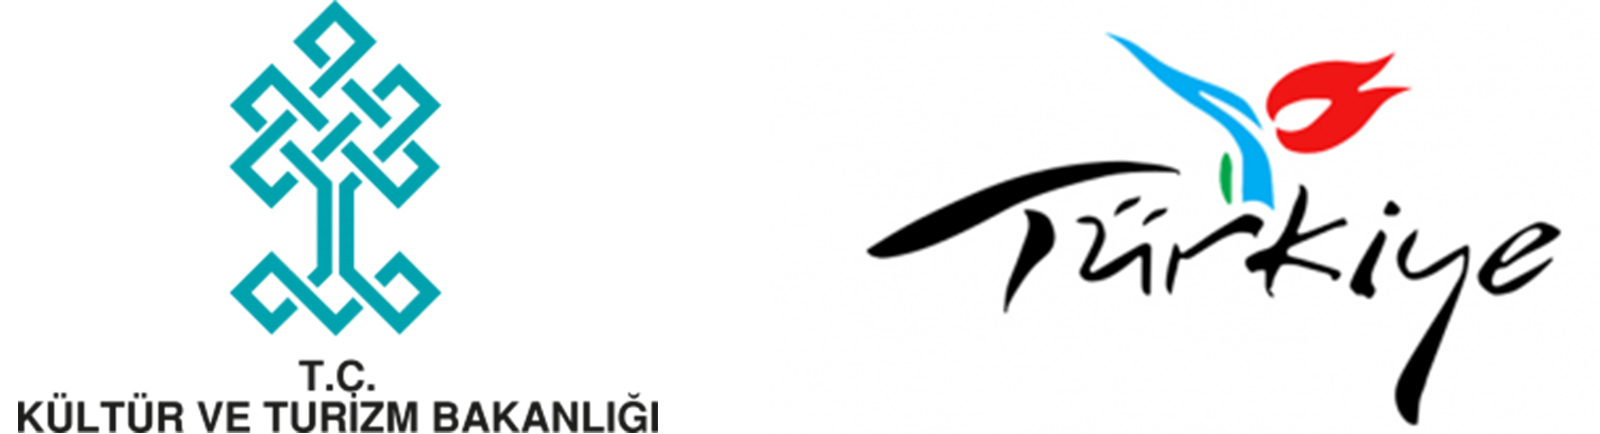 Türkiye’nin Tanıtım Logosu Olan Lale Figürlü Logosu Değişiyor